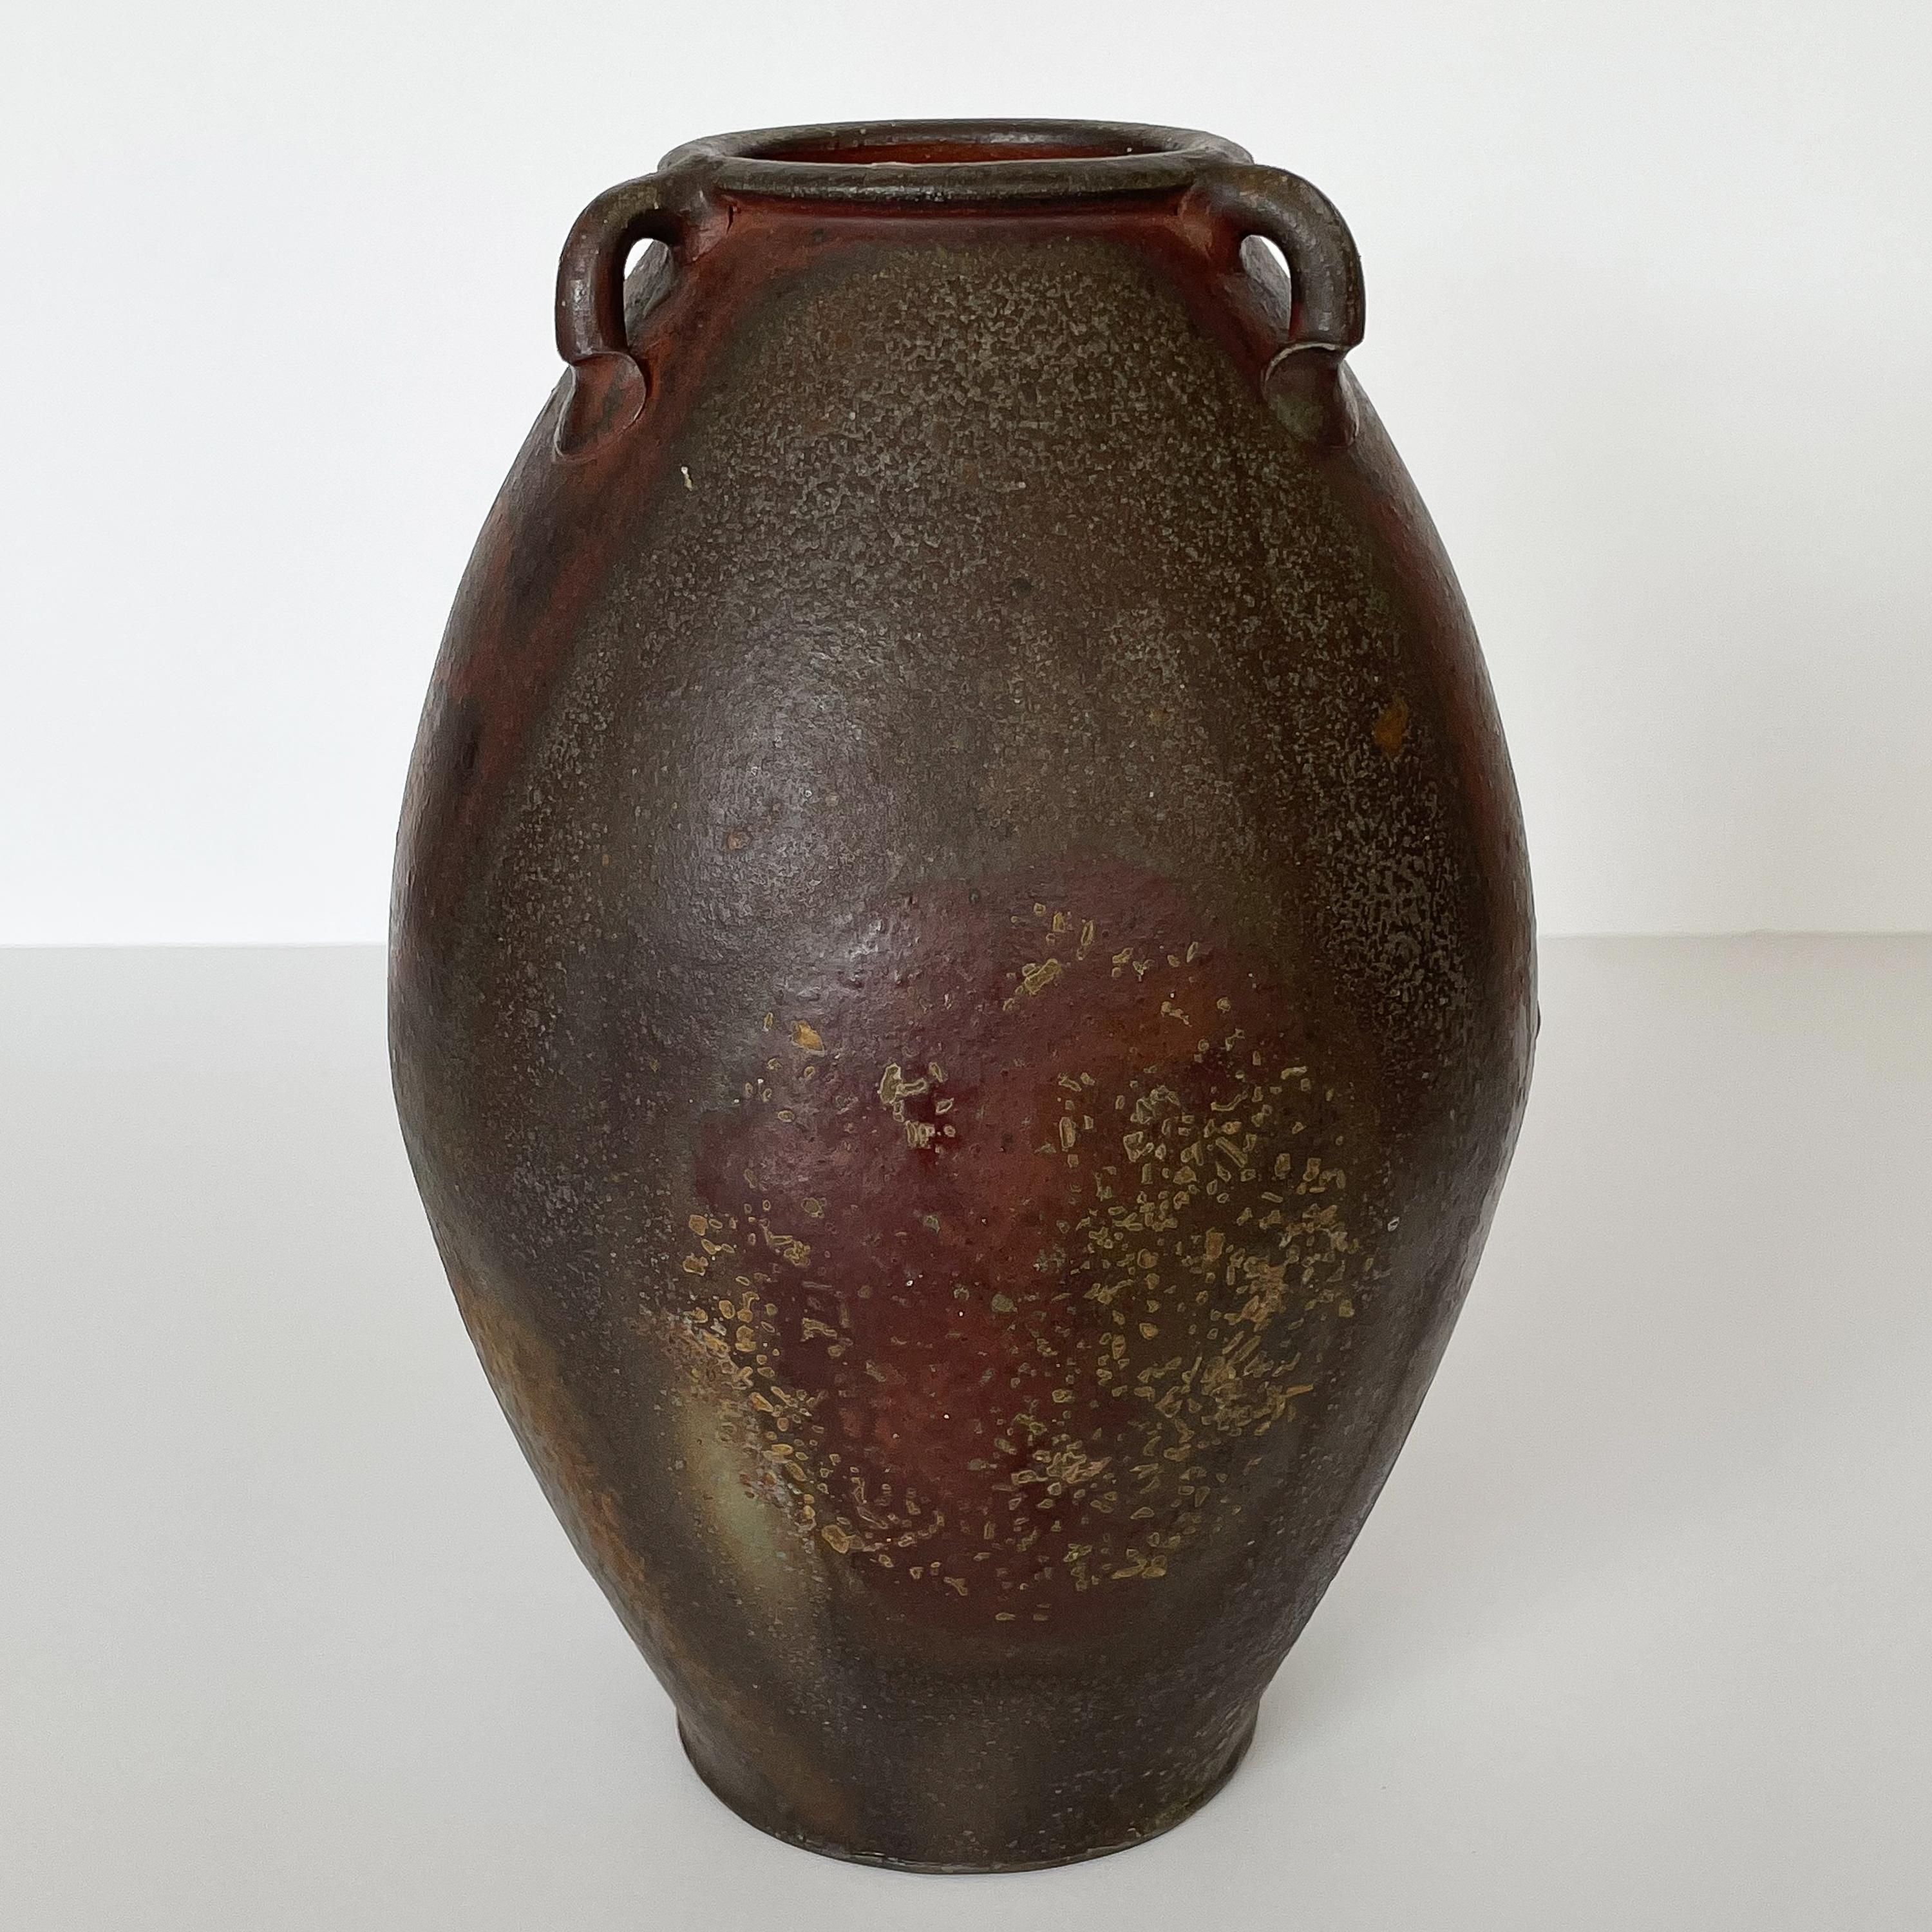 Eine schöne holzgebrannte Studio-Keramik-Vase von einem Kunsthandwerker aus North Carolina, ca. 2020. Handgedrehtes Steingutgefäß / Amphora mit drei Henkeln. Drei Tage lang im Holzofen mit Austernschalen gebrannt, um eine natürliche, dramatische